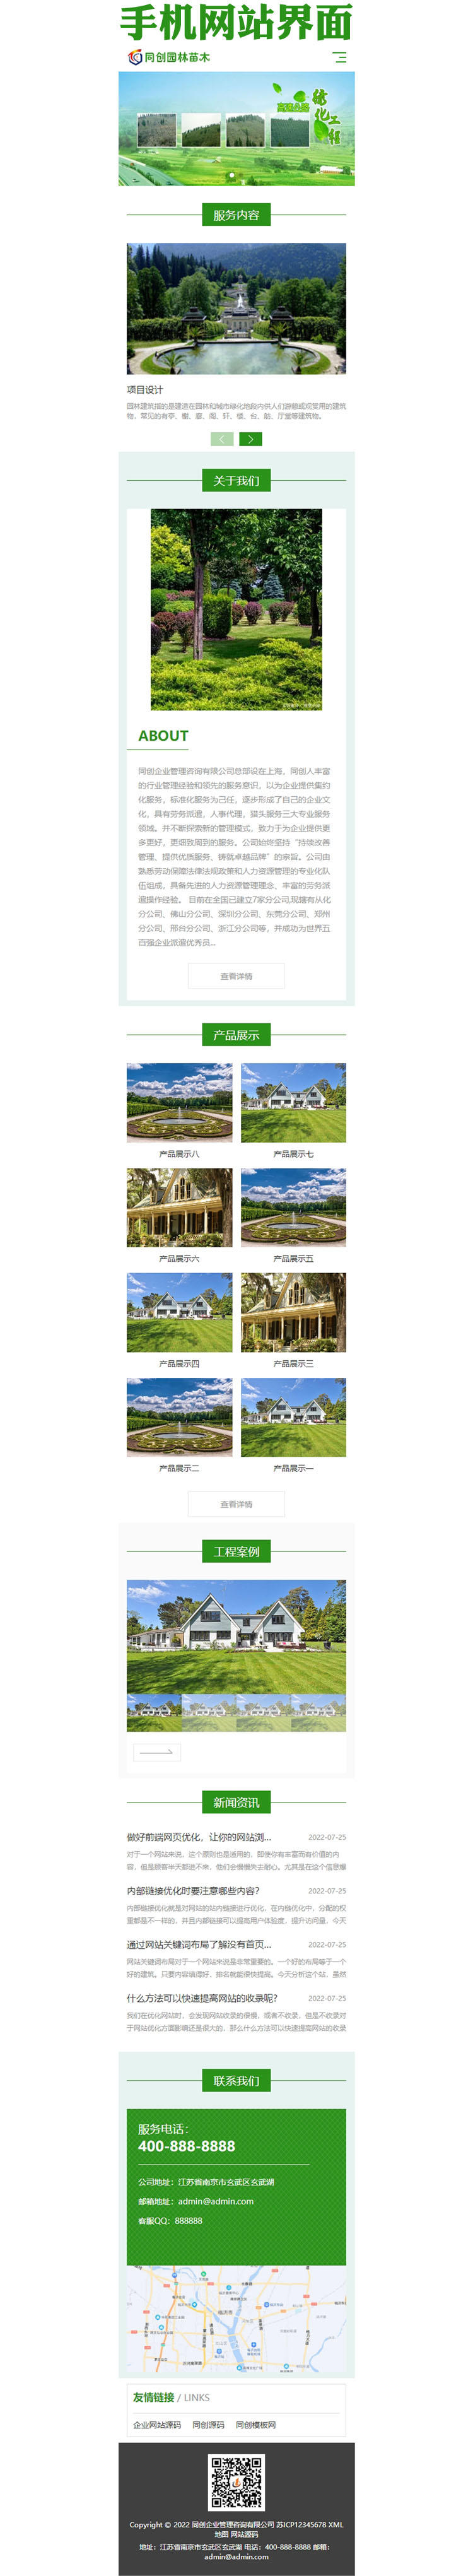 响应式园林景观工程网站源码程序-XX213-3